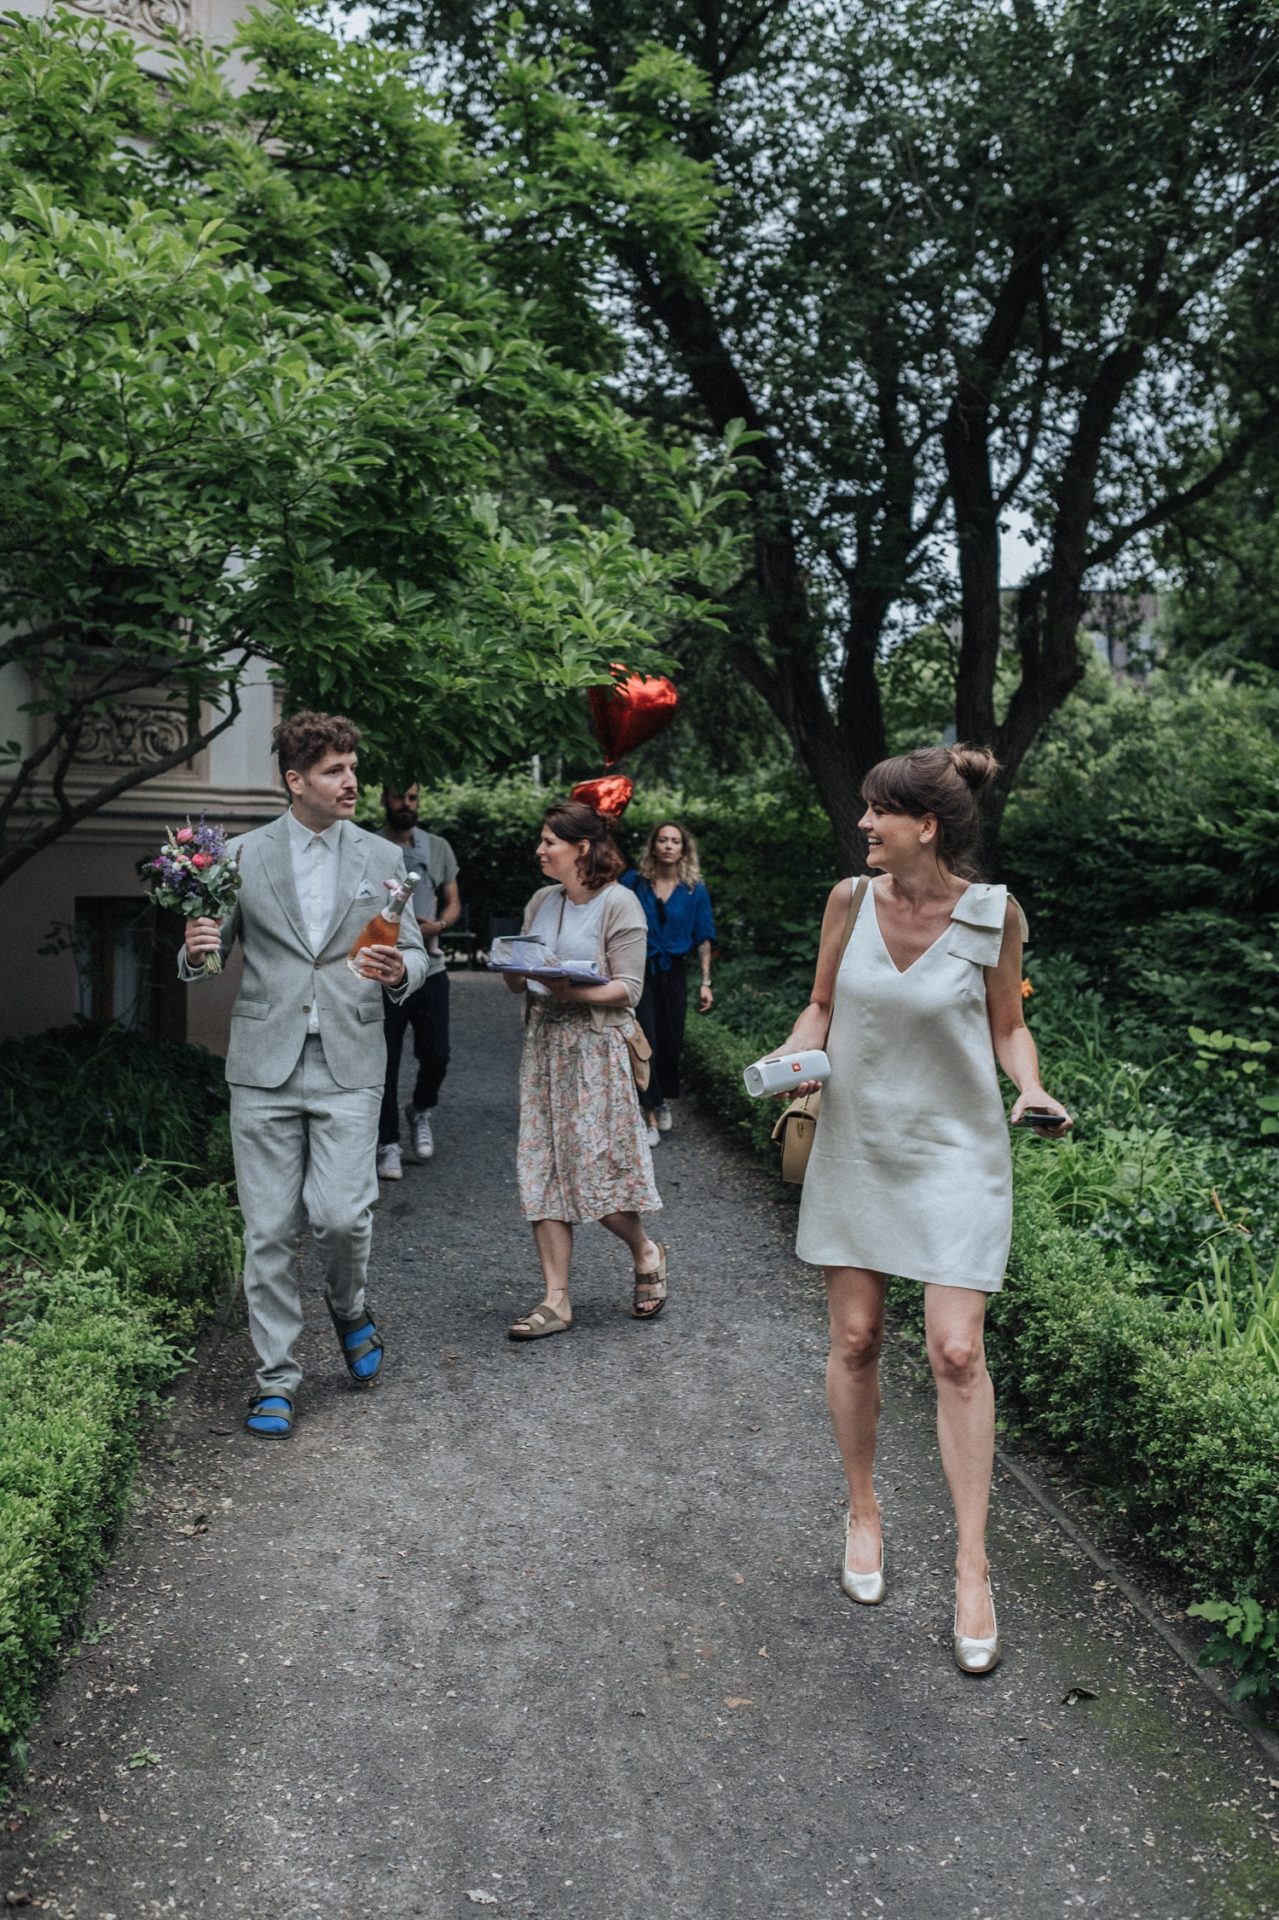 StorieOfUs HochzeitsfotografBerlin VillaKogge Elopement HochzeitsfotografinBerlin modern urban Hochzeitsreportage